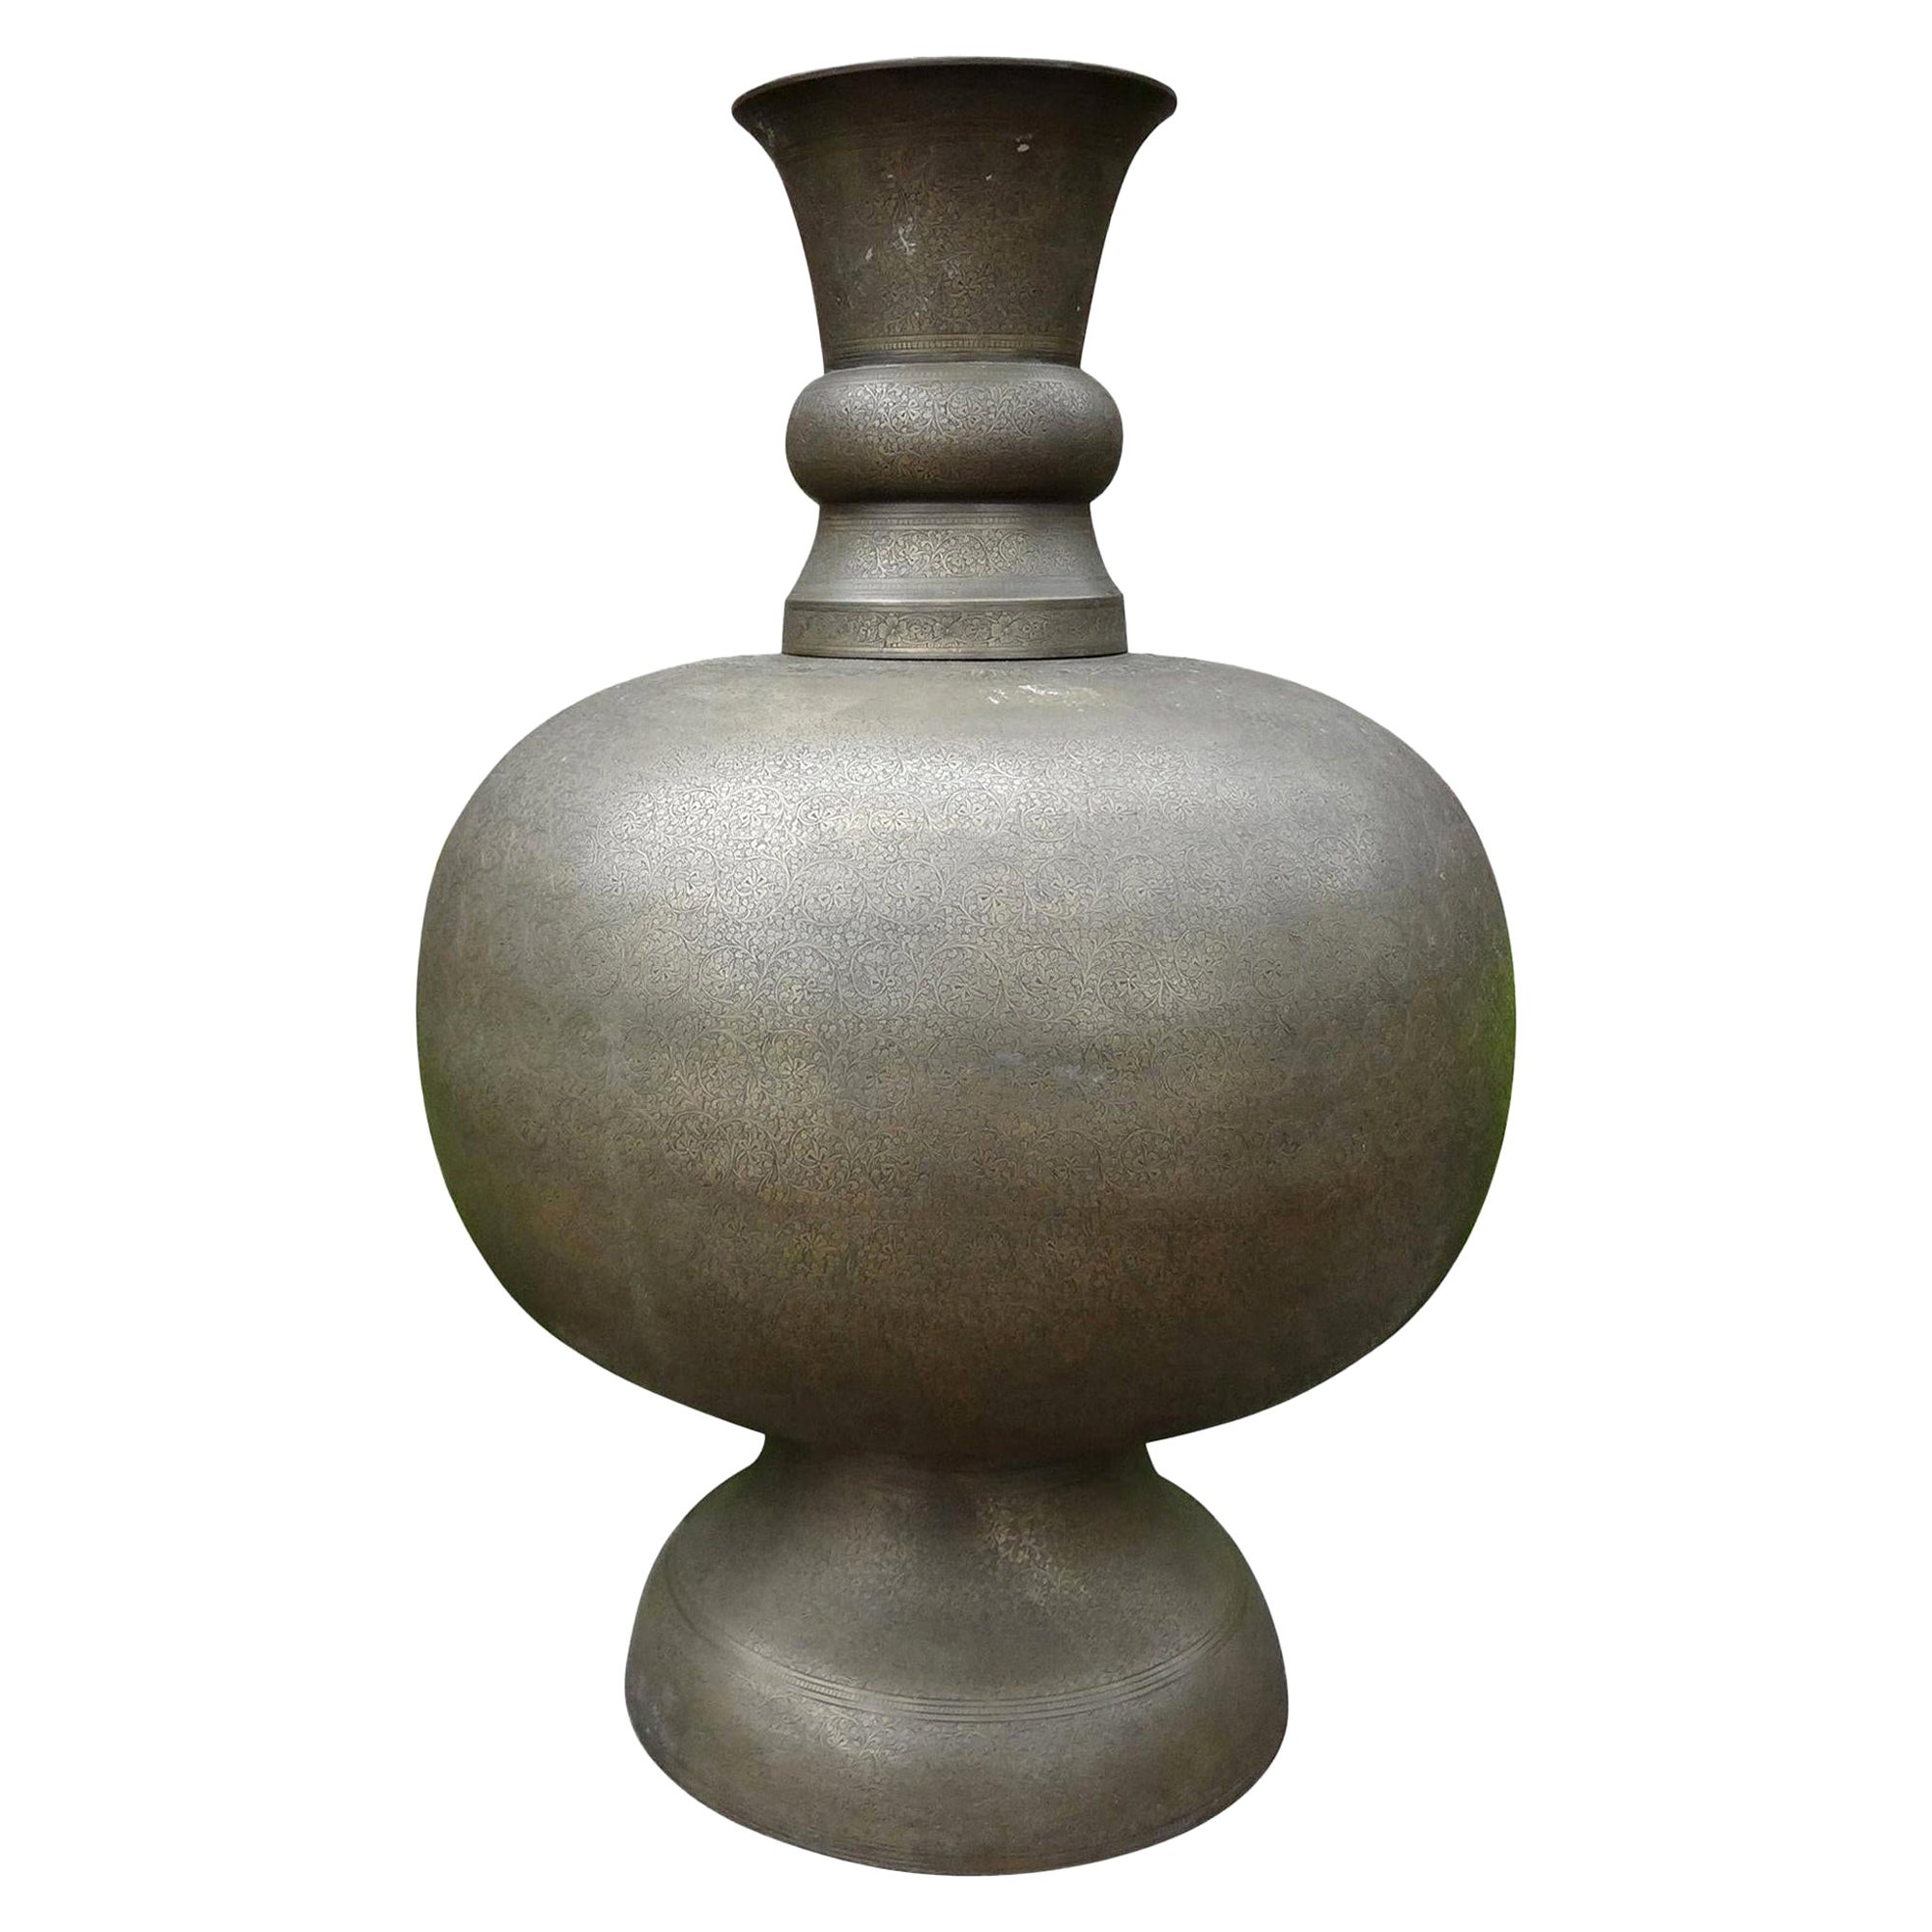 Grande urne en laiton gravé de style arabesque du Moyen-Orient